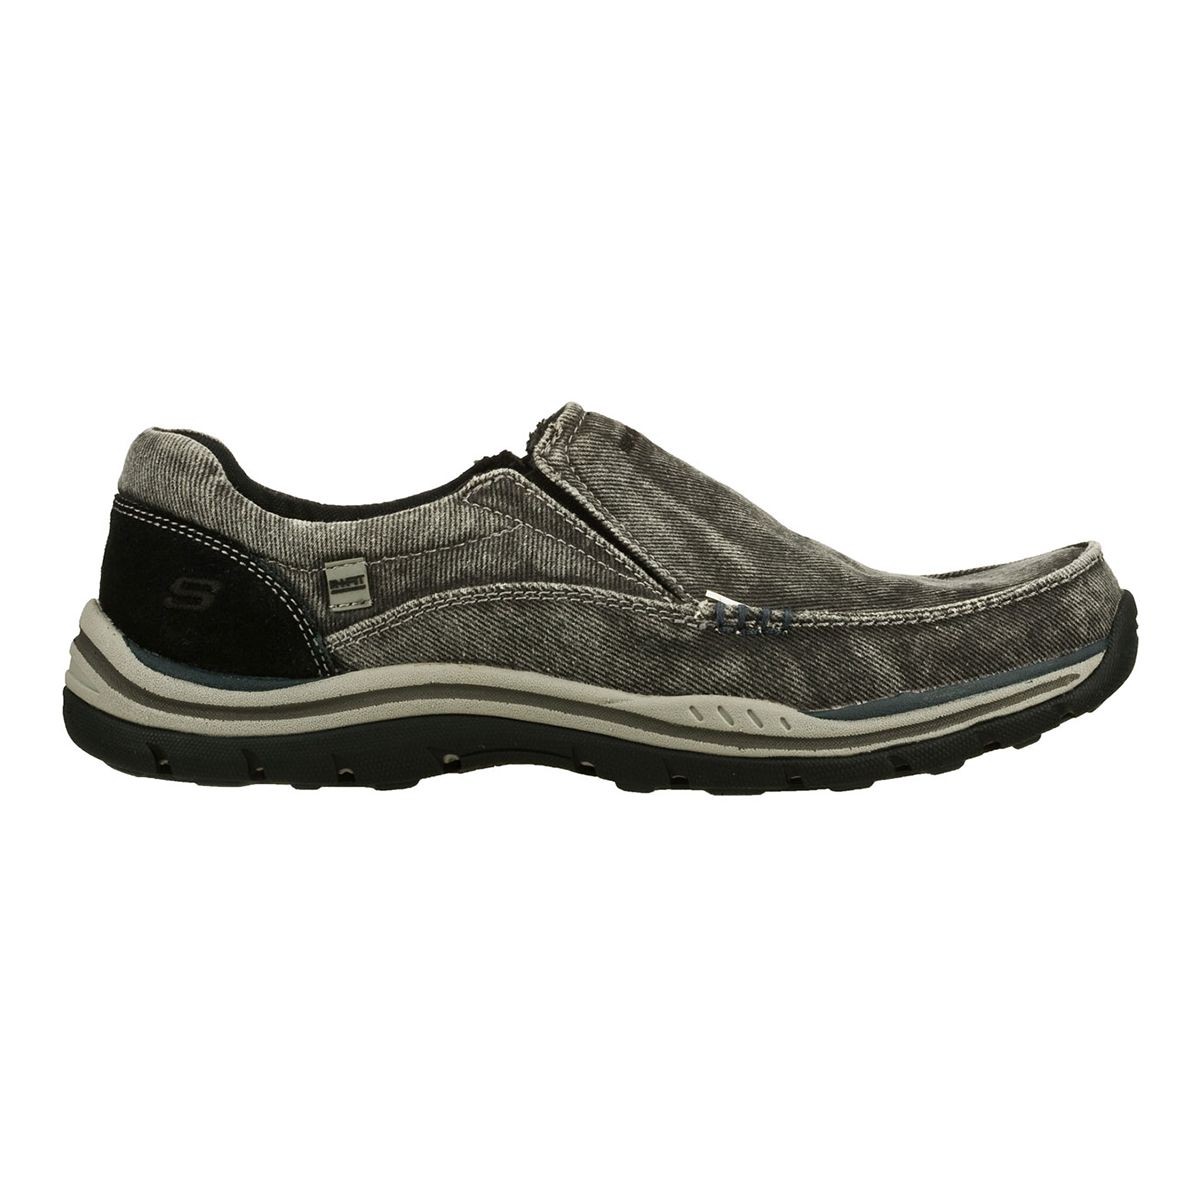 Skechers Men's Expected Avillo Relaxed Fit Slip On Shoes - Black